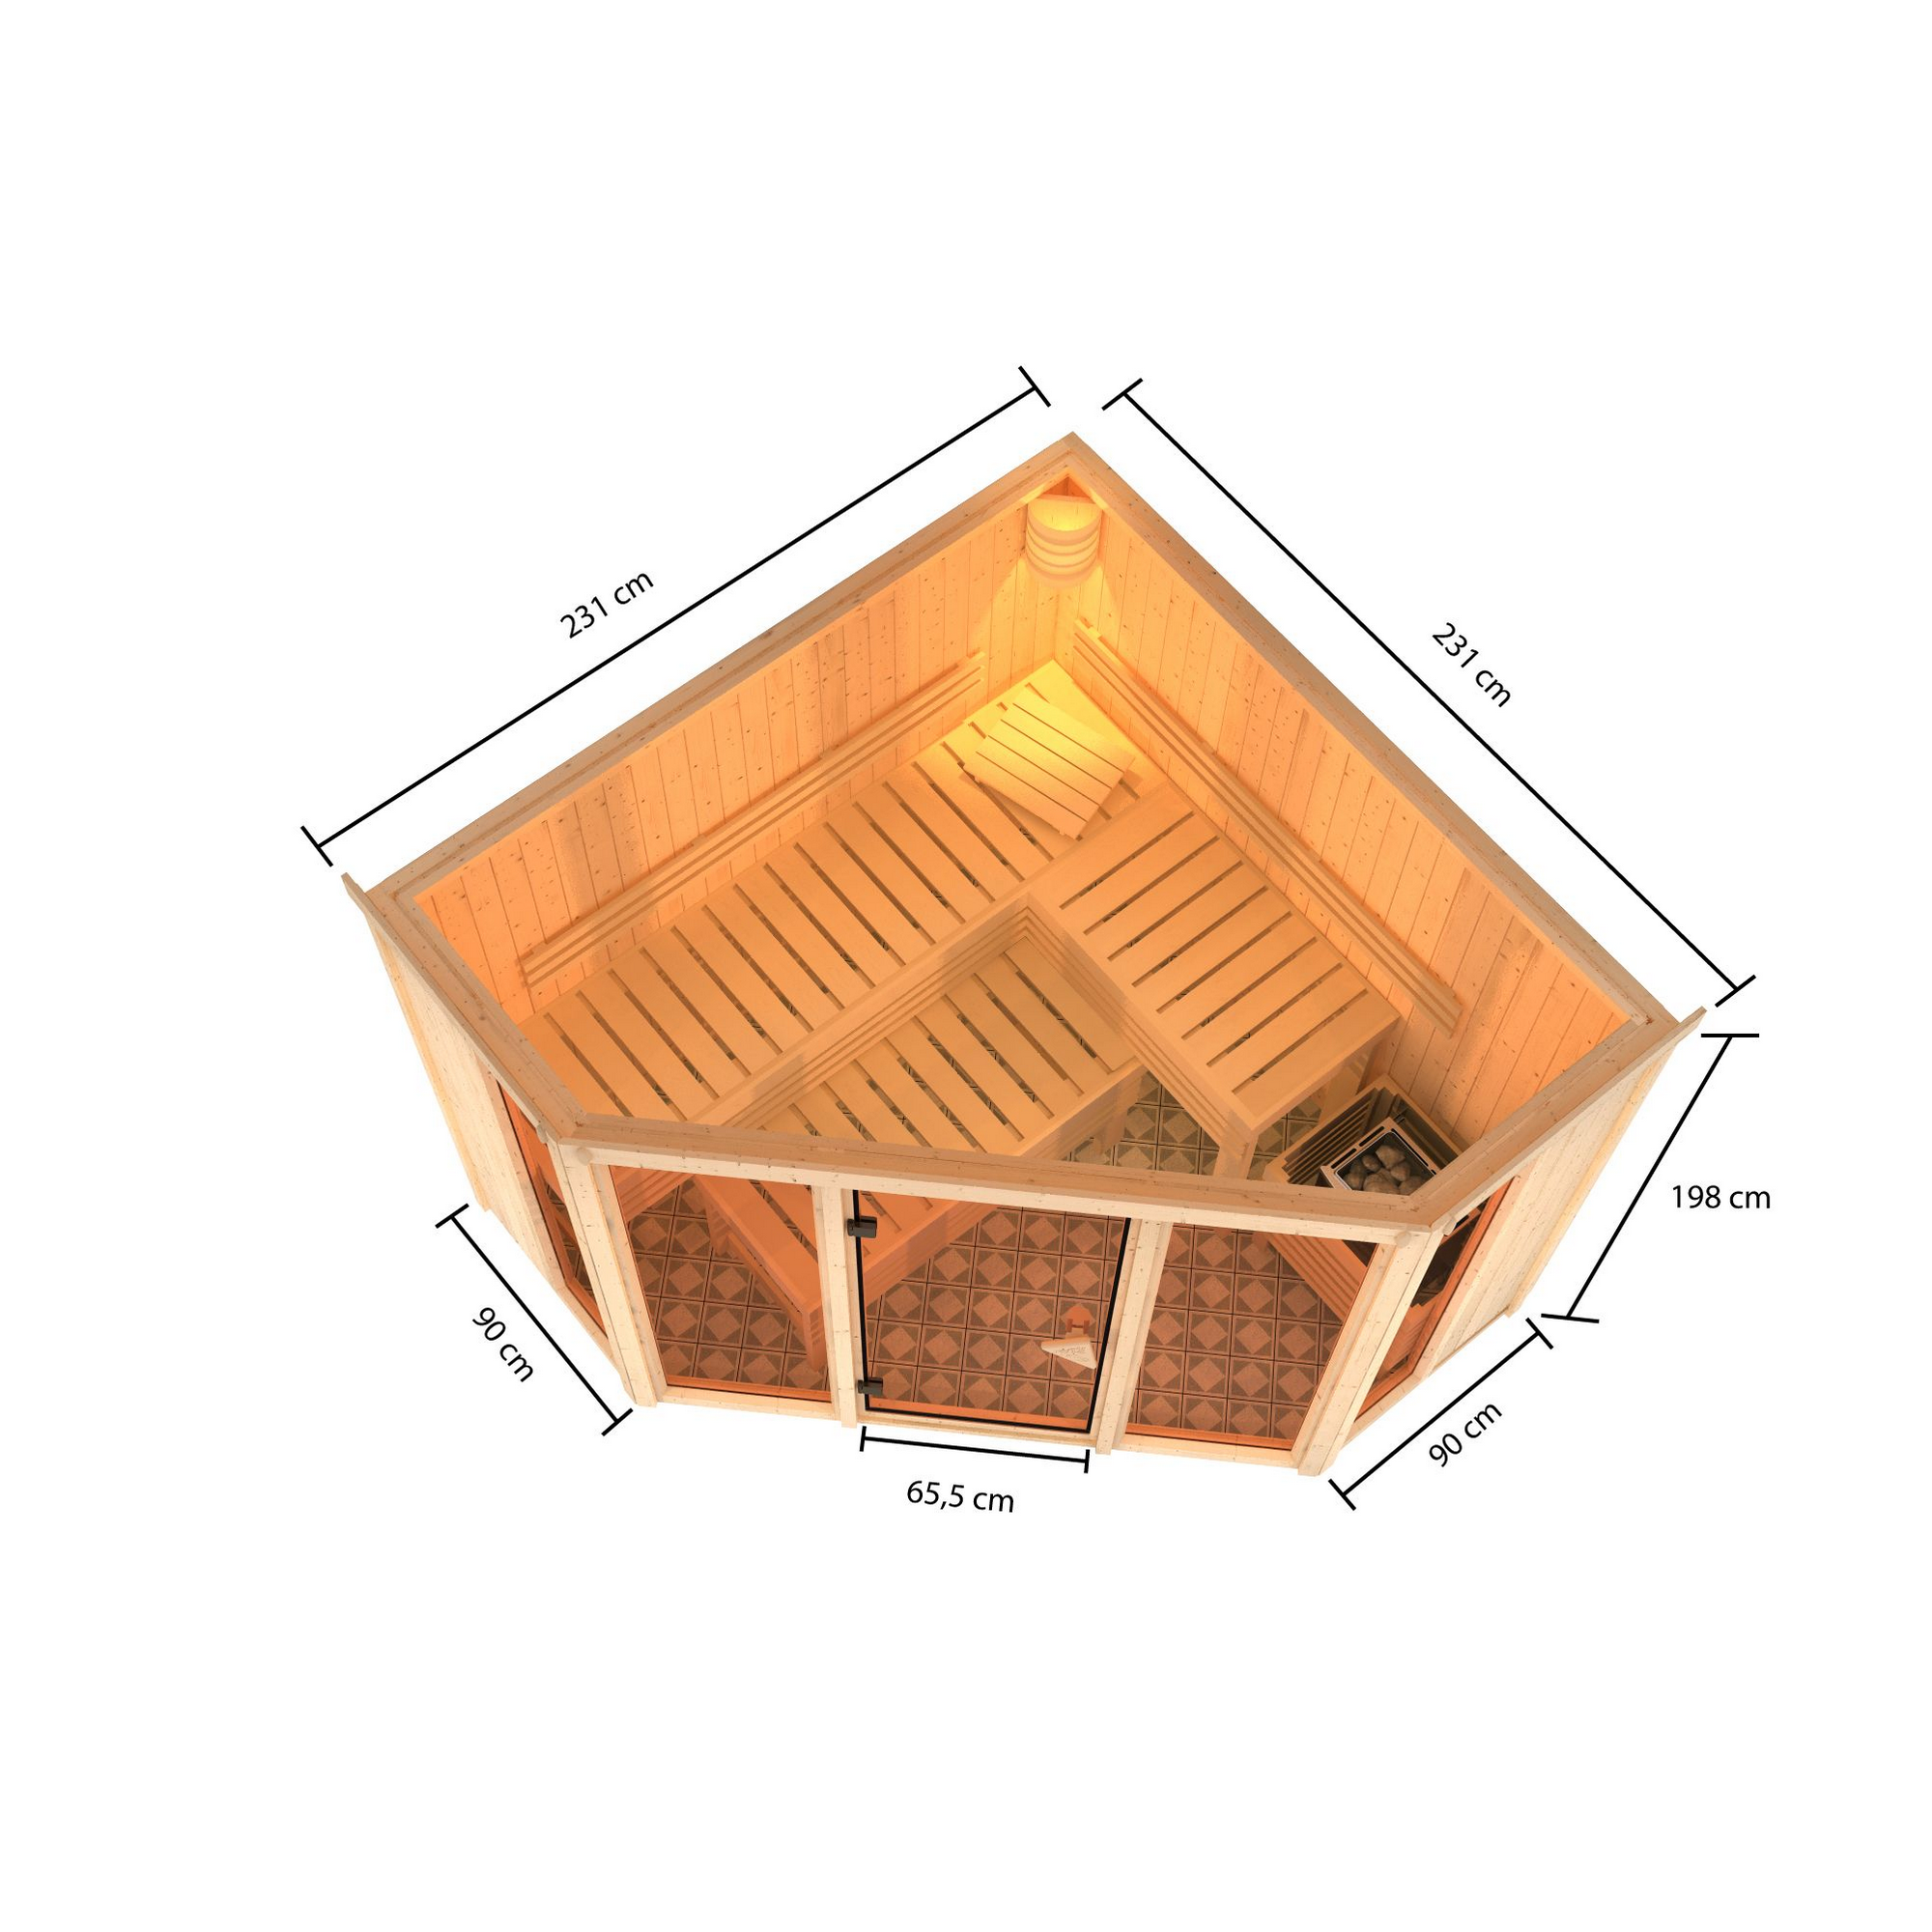 Sauna 'Aurelia 2' naturbelassen mit bronzierter Tür 9 kW Ofen integrierte Steuerung 231 x 231 x 198 cm + product picture